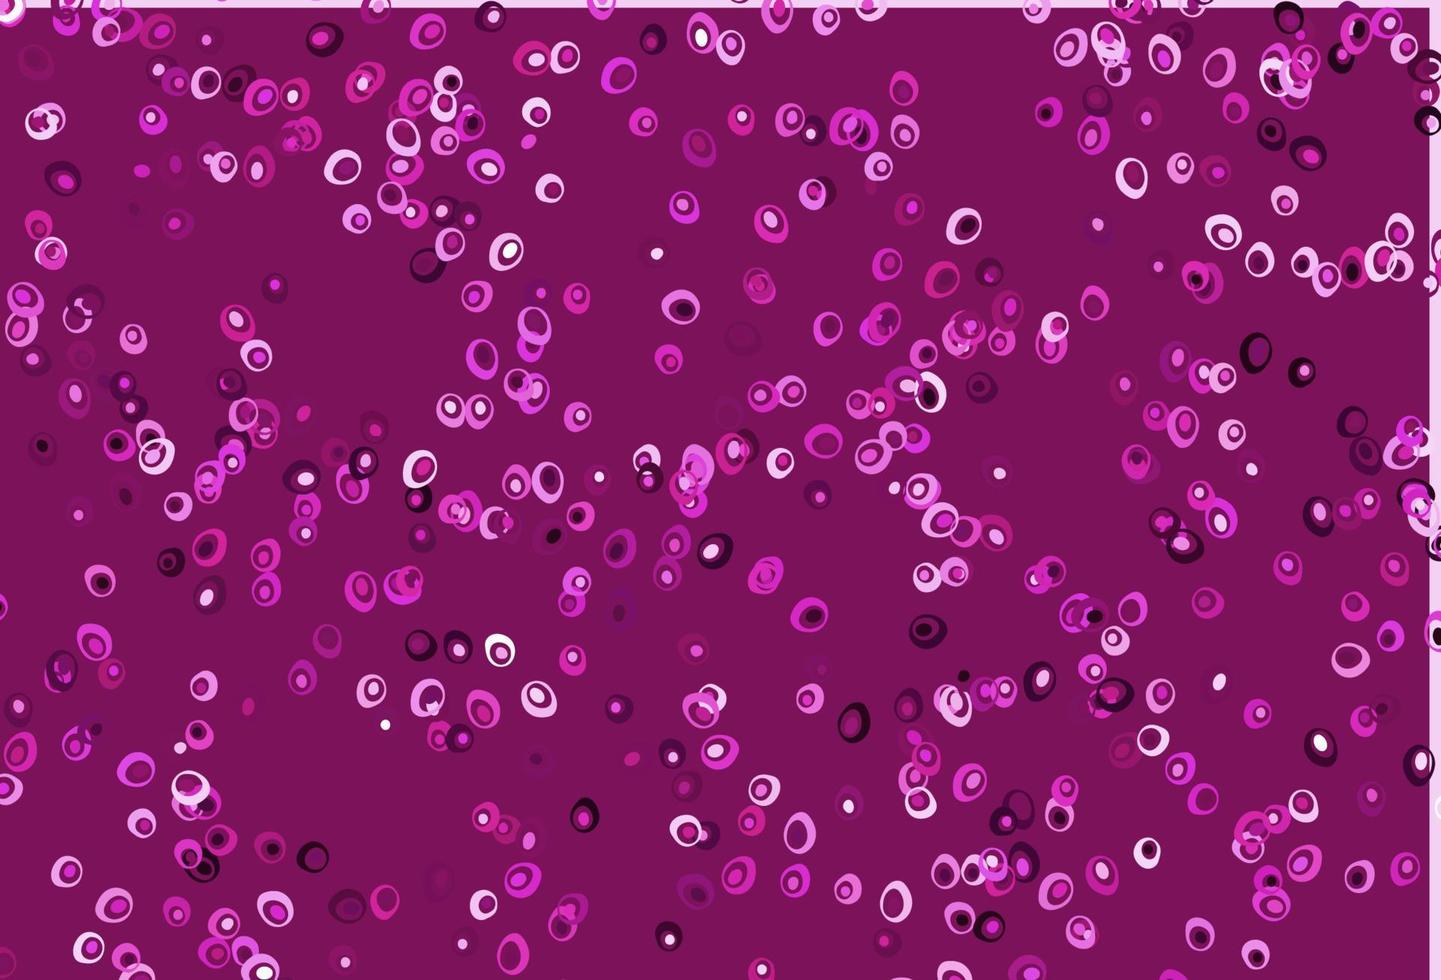 fond de vecteur rose clair avec des bulles.